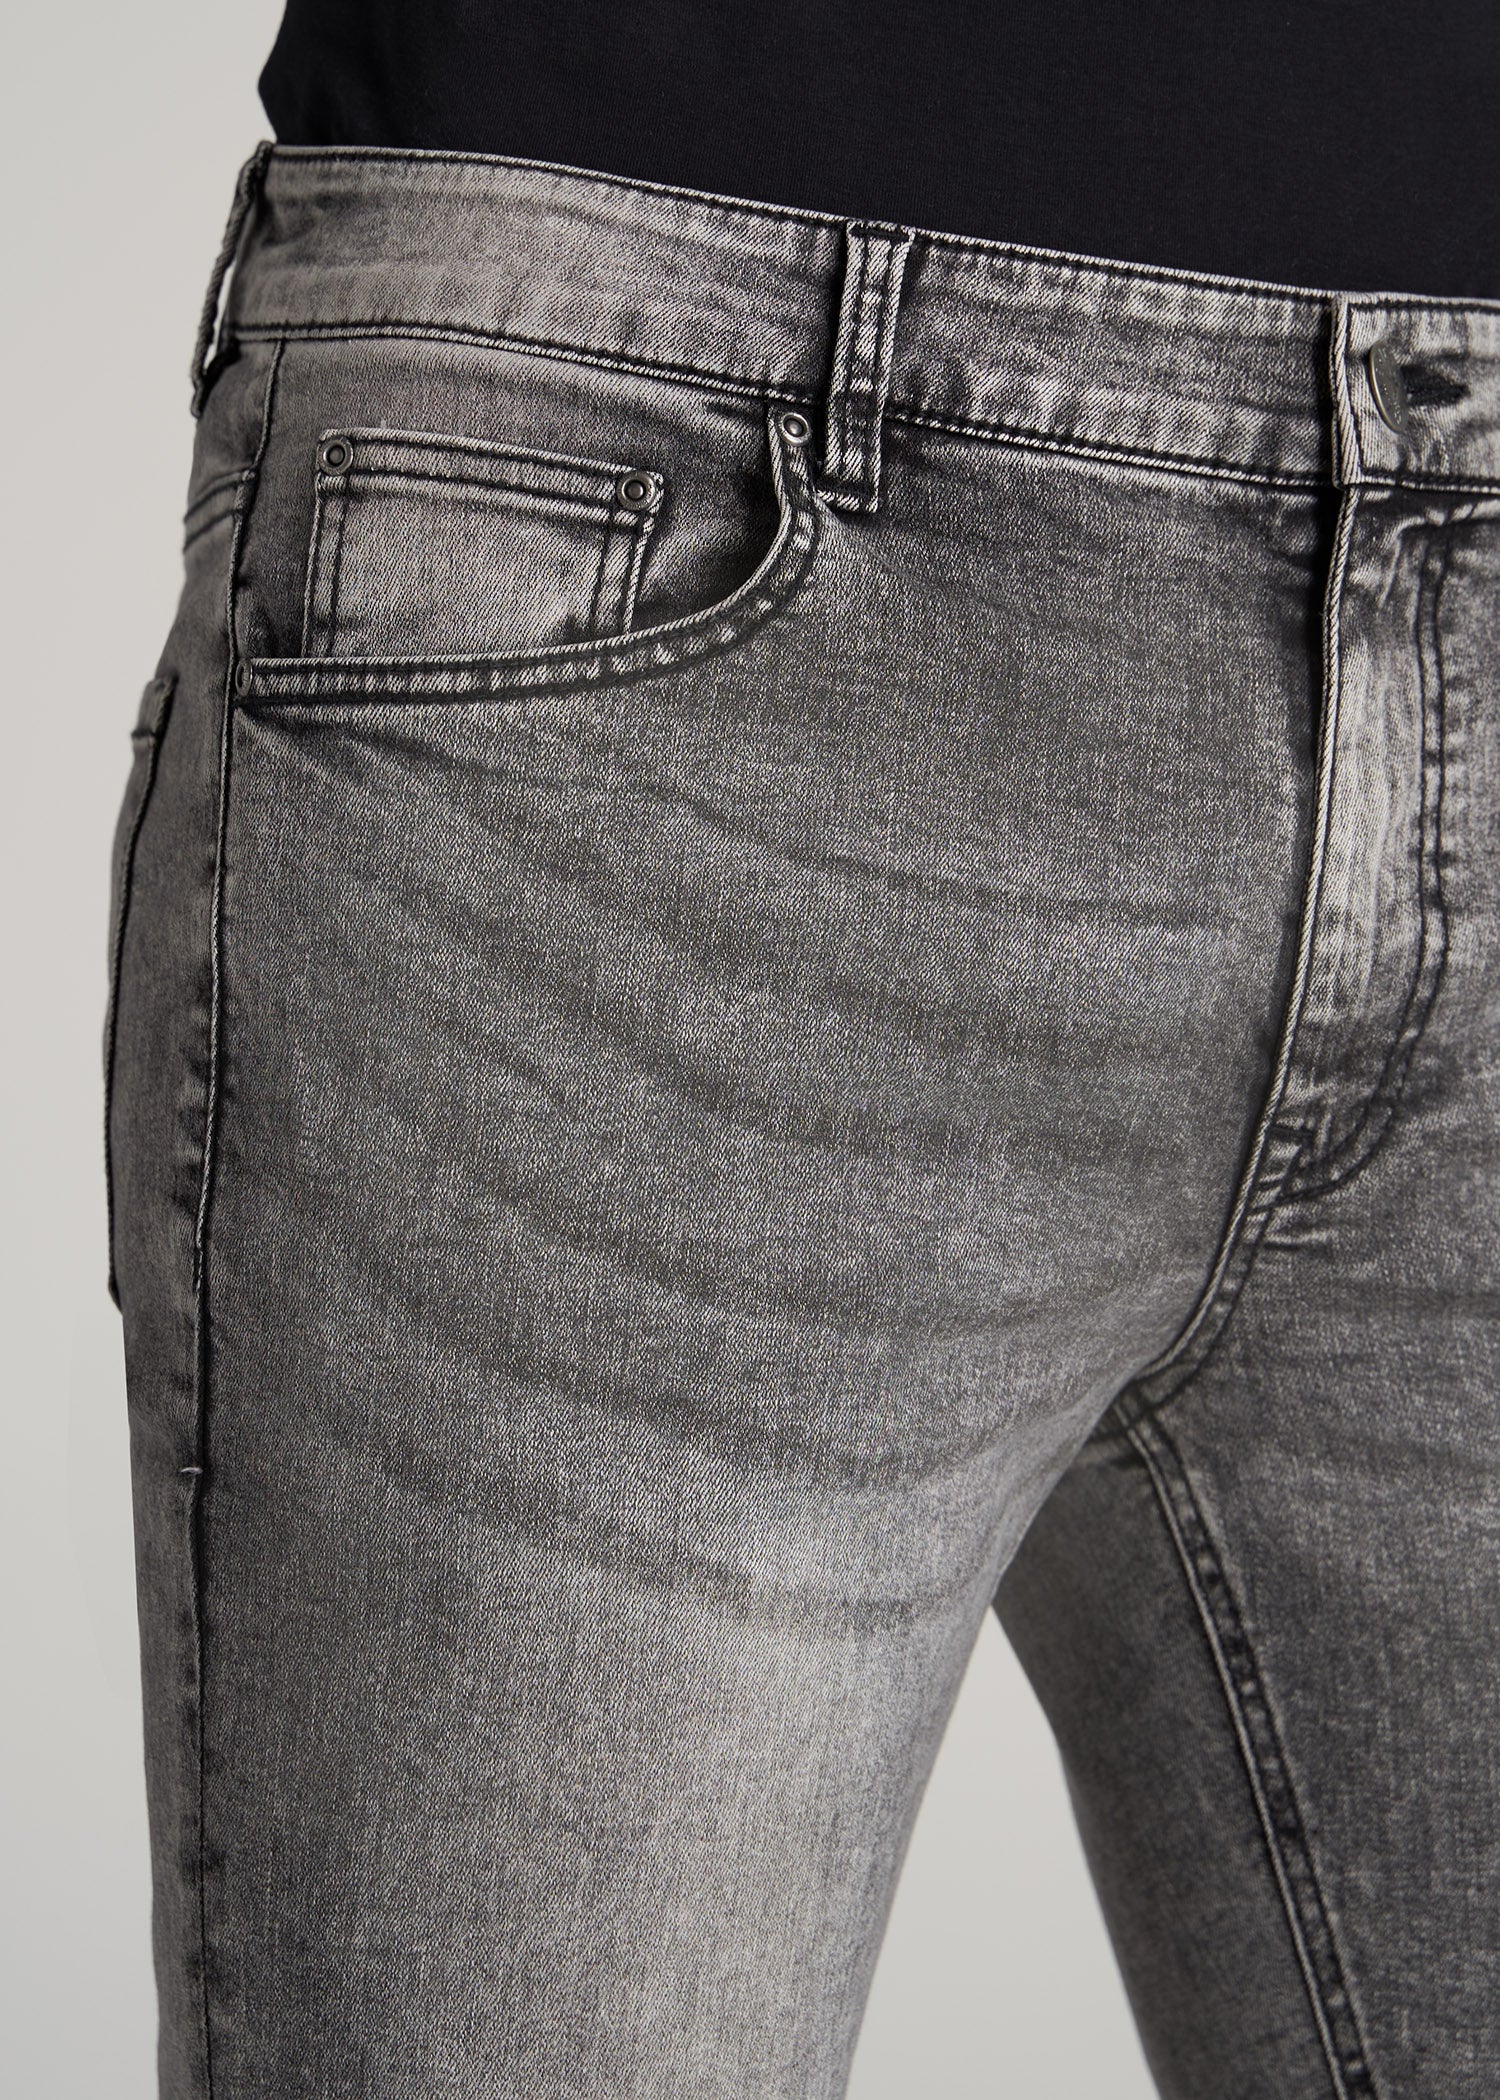 Faded Jeans Jeans Tall Tall – American Mens: Faded Black Skinny Black Travis